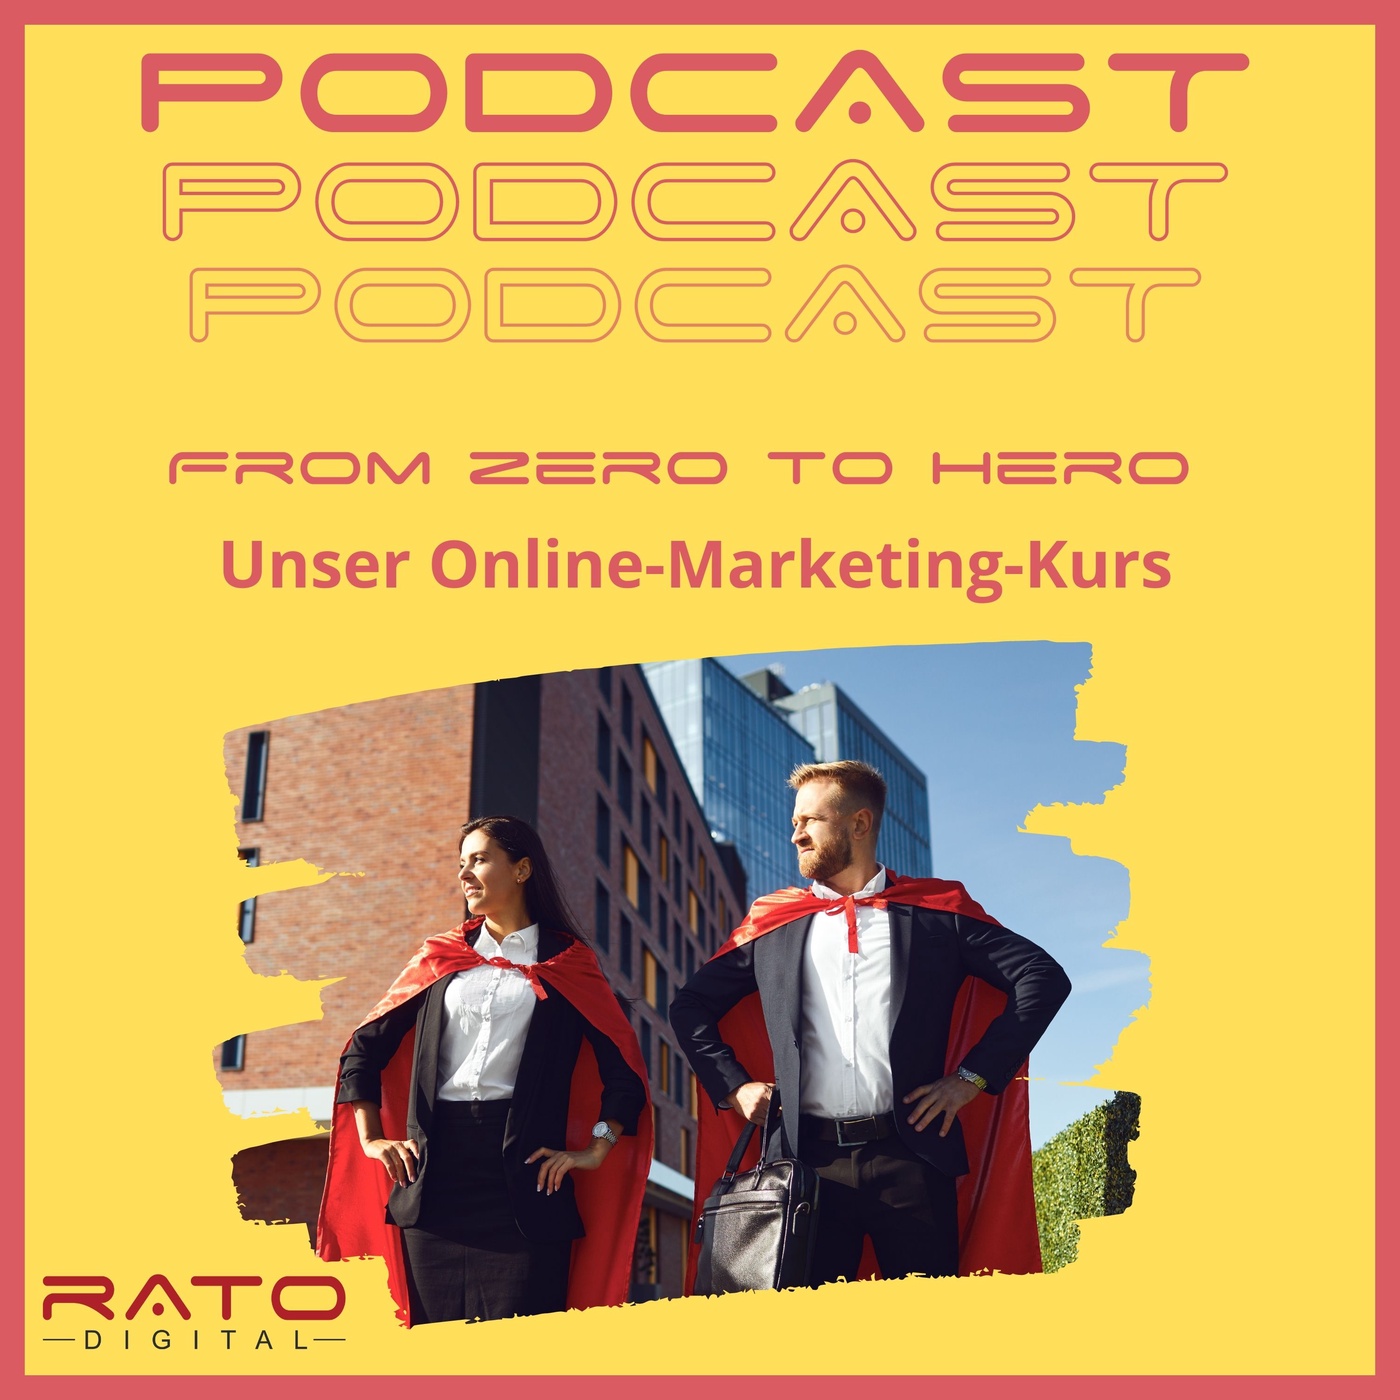 From Zero to Hero: Unser Online-Marketing-Kurs